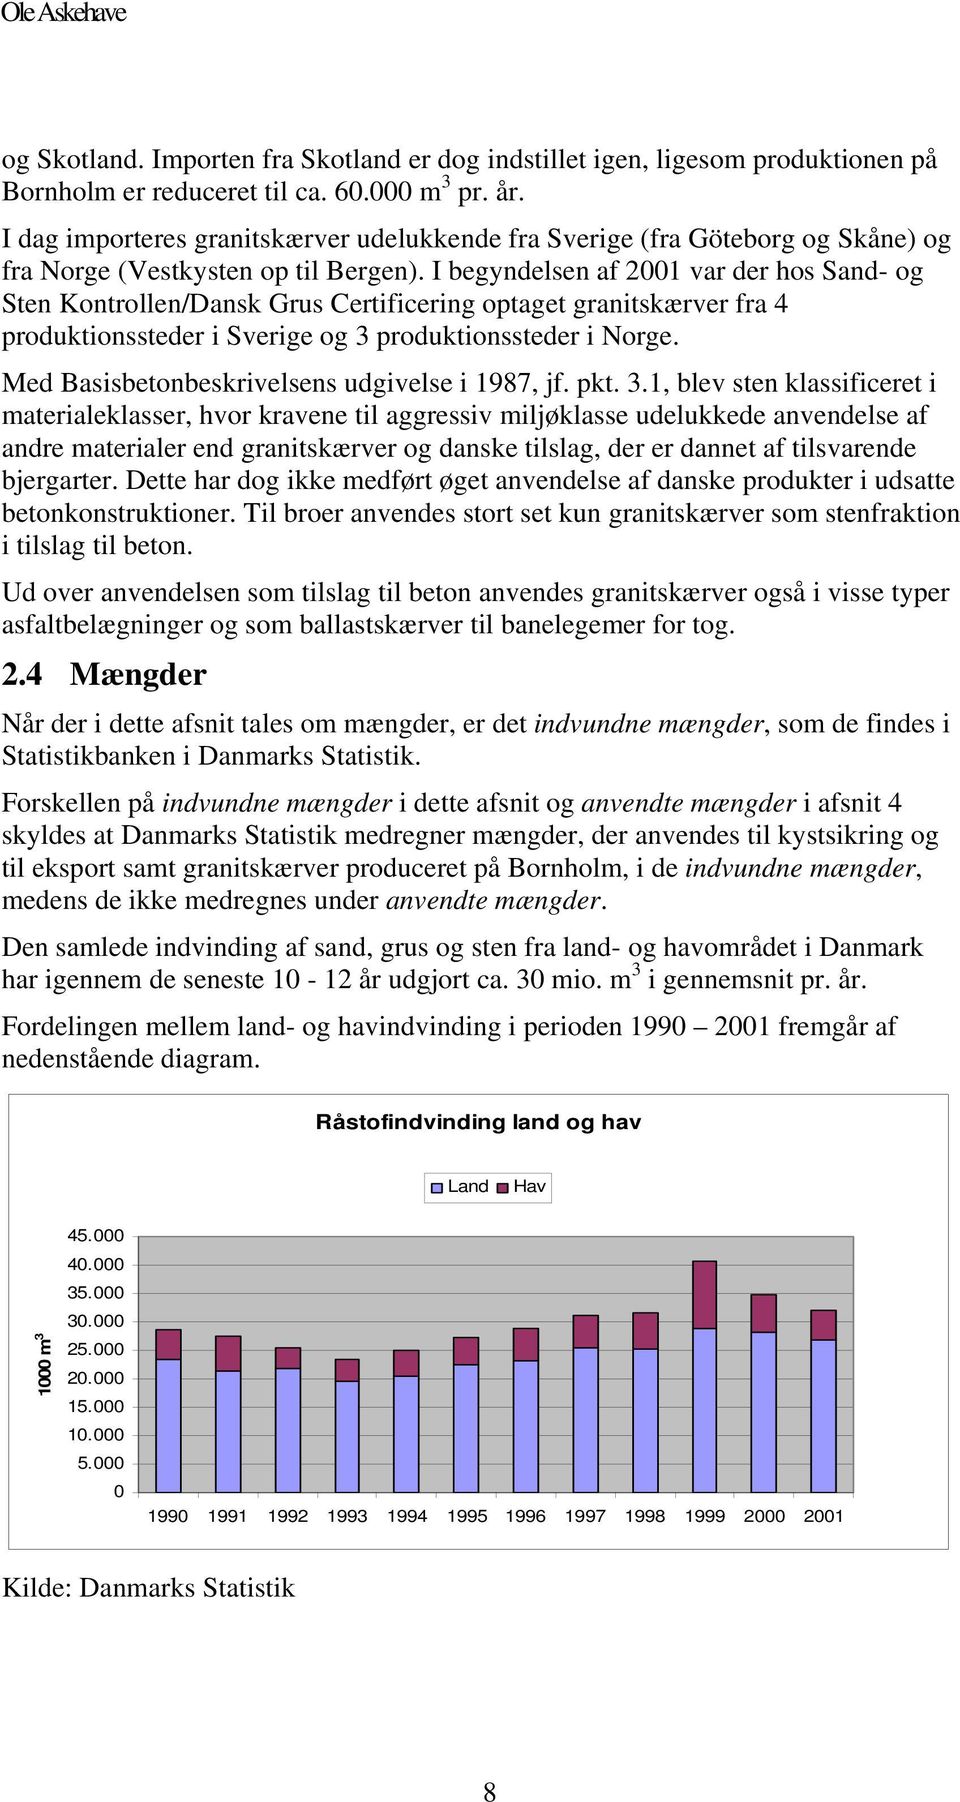 I begyndelsen af 21 var der hos Sand- og Sten Kontrollen/Dansk Grus Certificering optaget granitskærver fra 4 produktionssteder i Sverige og 3 produktionssteder i Norge.